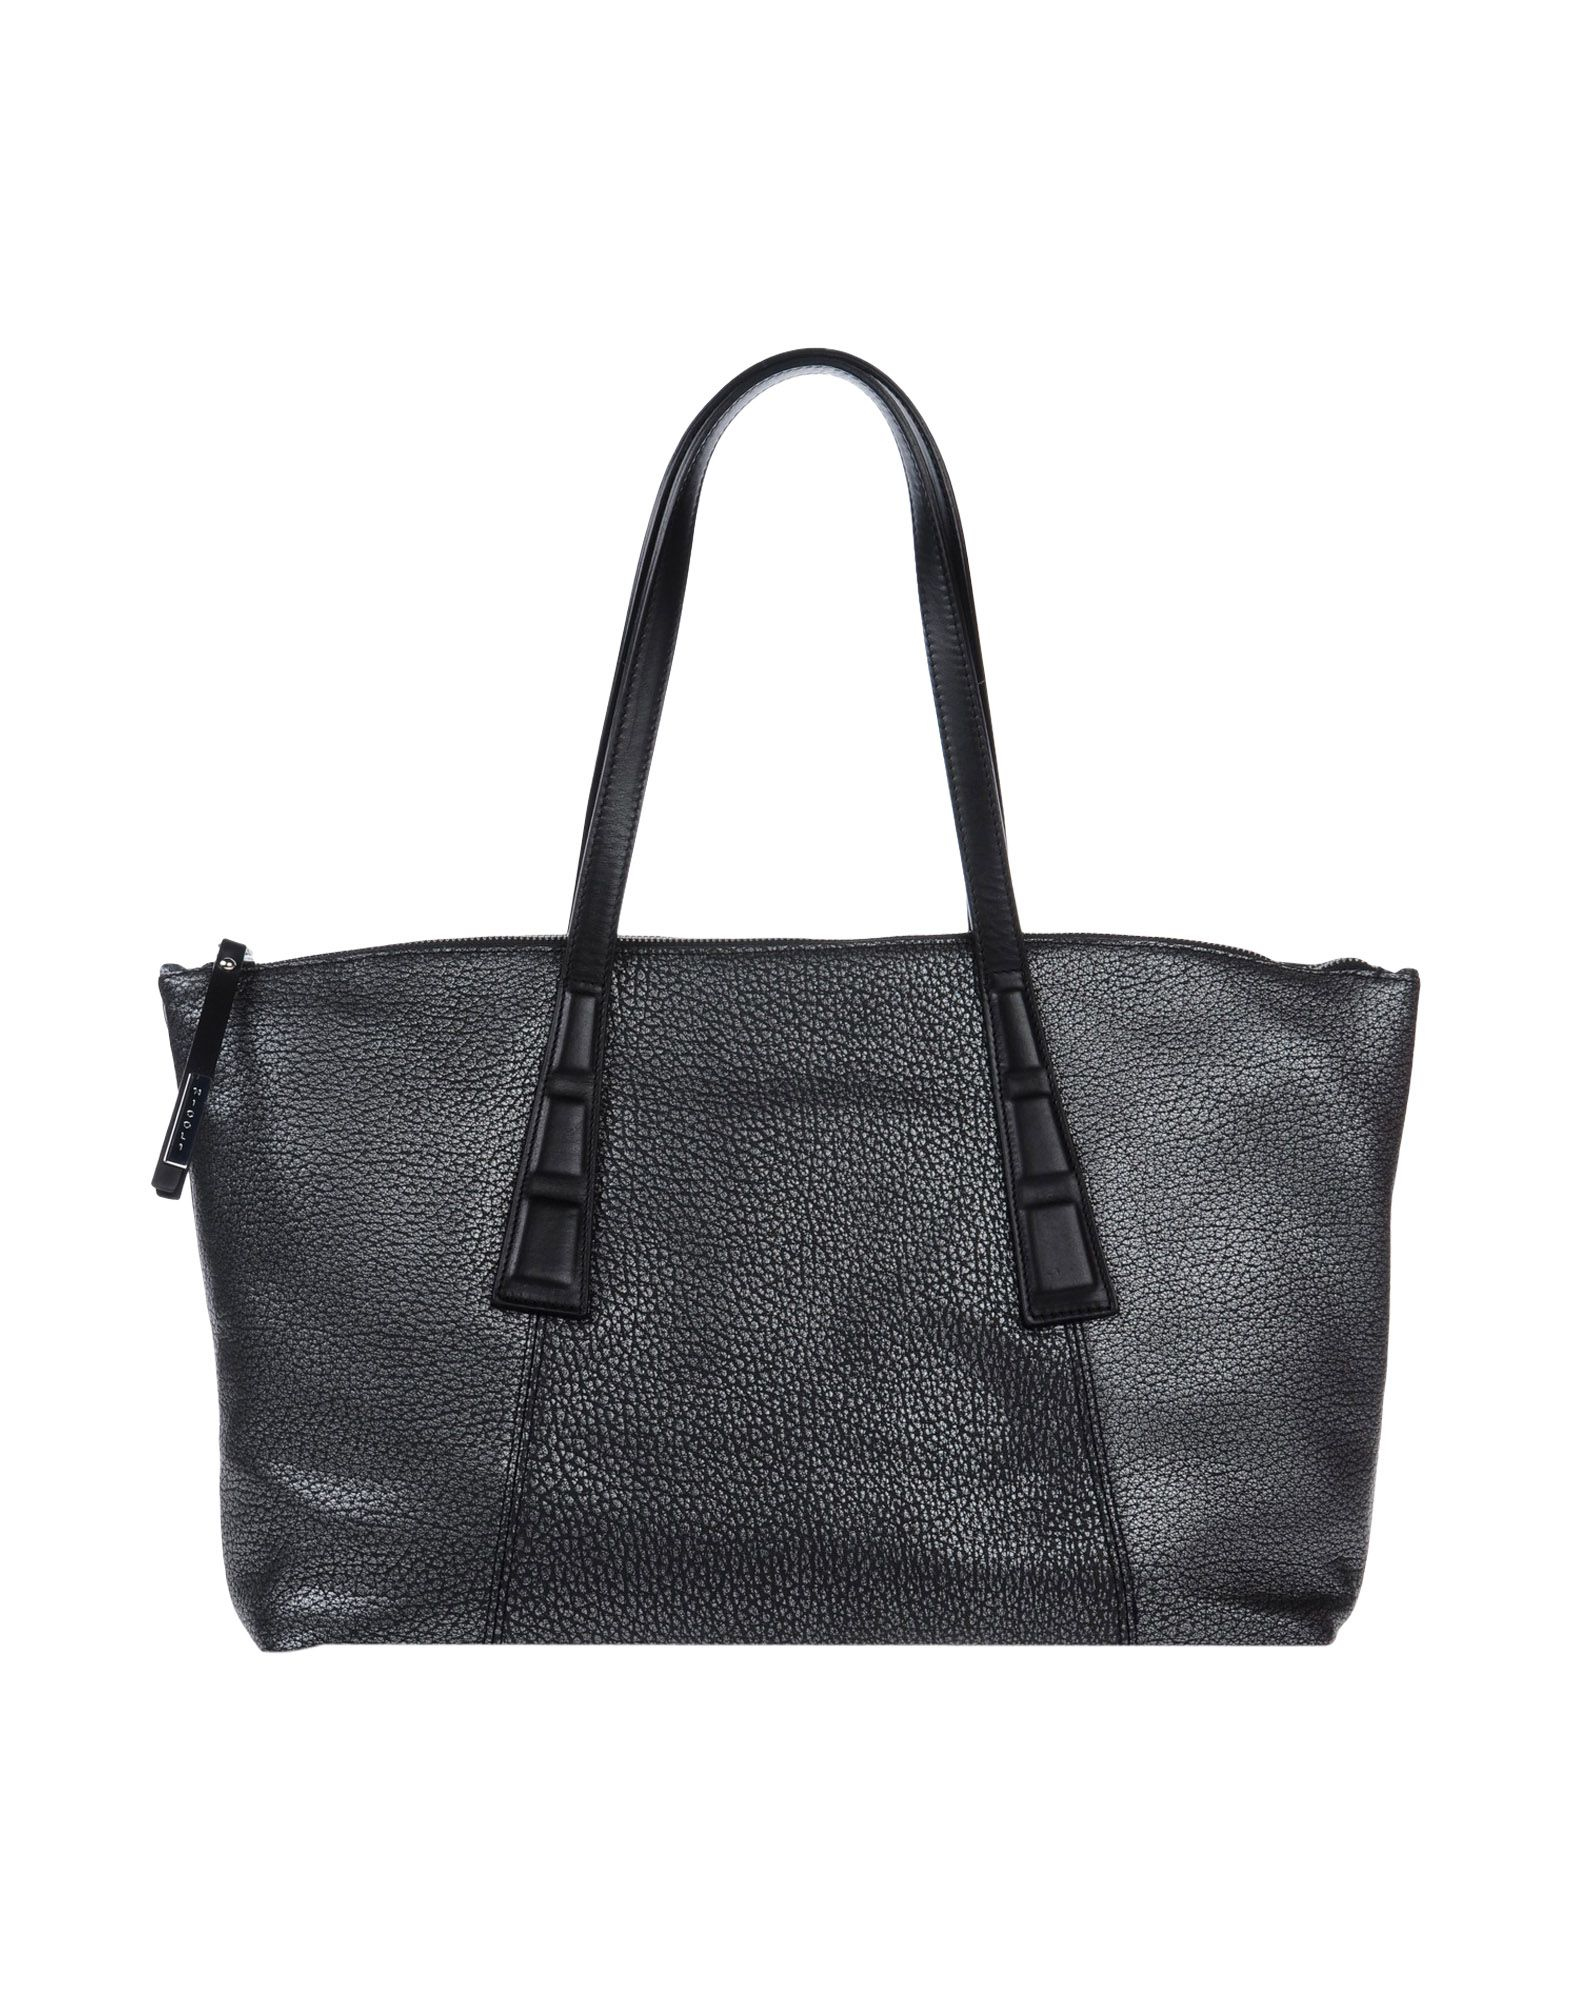 Nicoli Handbag in Black - Lyst